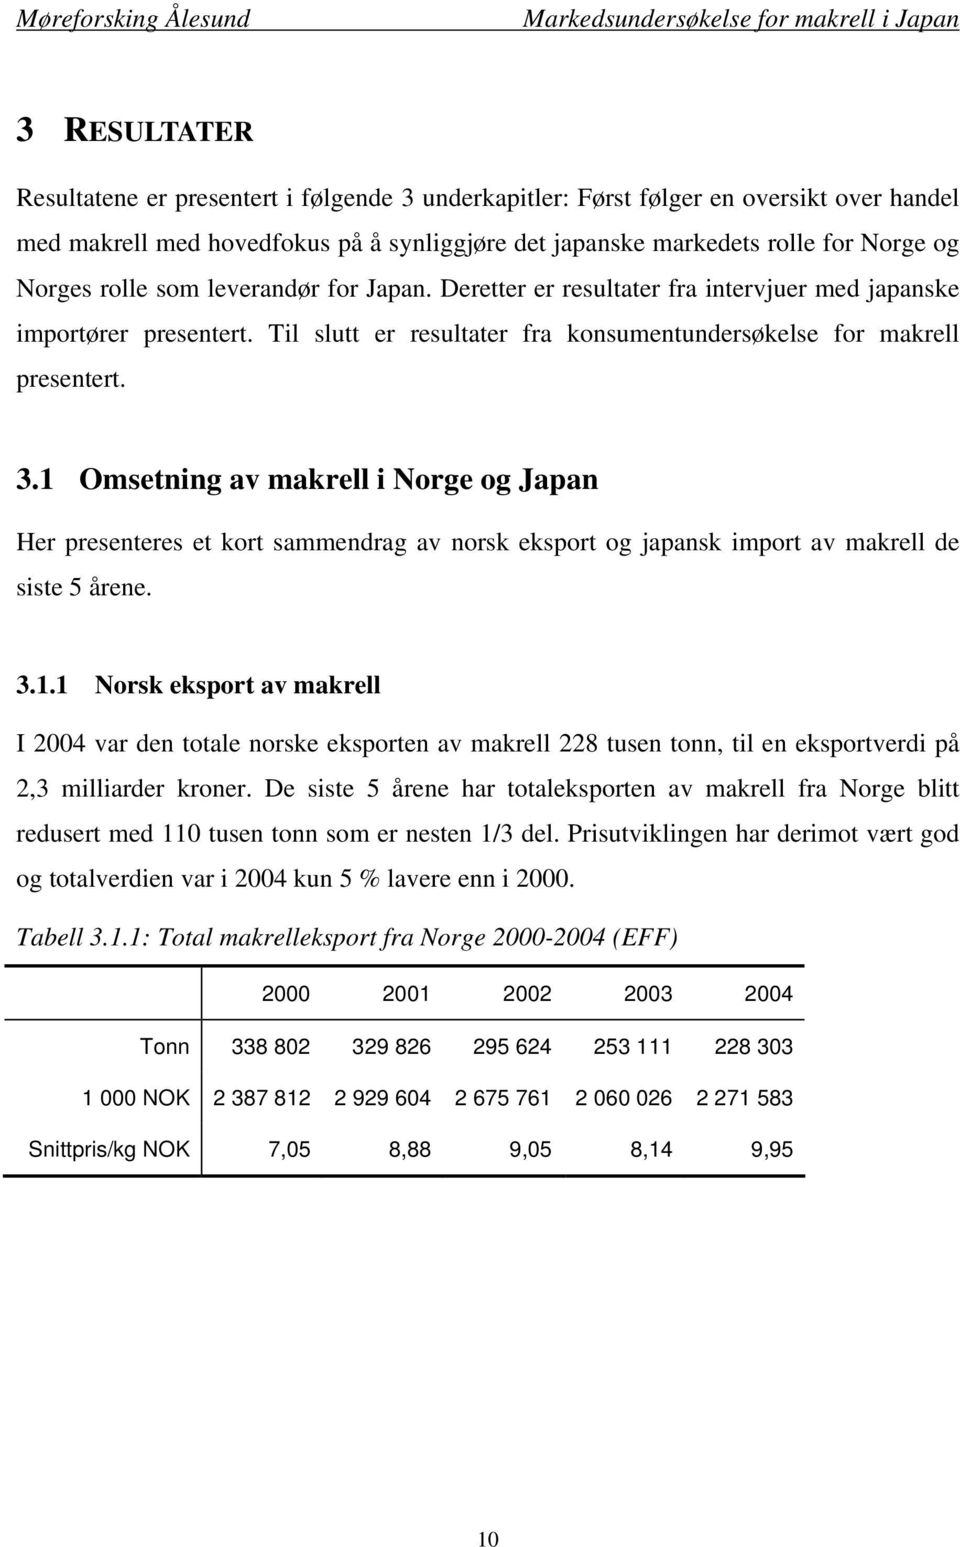 1 Omsetning av makrell i Norge og Japan Her presenteres et kort sammendrag av norsk eksport og japansk import av makrell de siste 5 årene. 3.1.1 Norsk eksport av makrell I 2004 var den totale norske eksporten av makrell 228 tusen tonn, til en eksportverdi på 2,3 milliarder kroner.